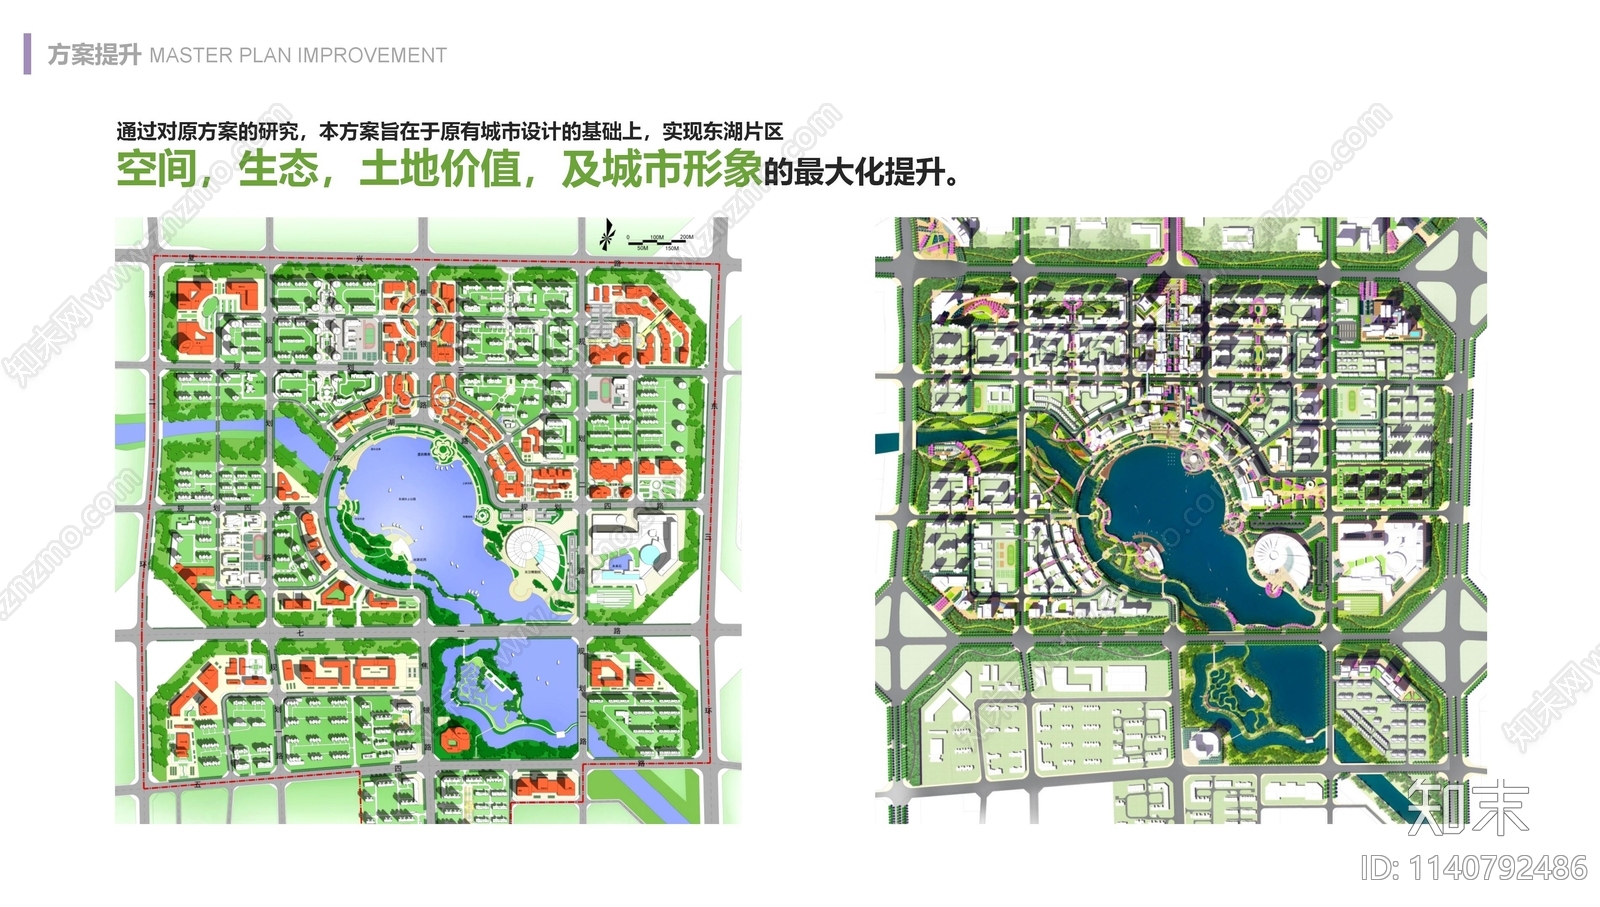 保定东湖未来新天地城市规划方案文本下载【ID:1140792486】